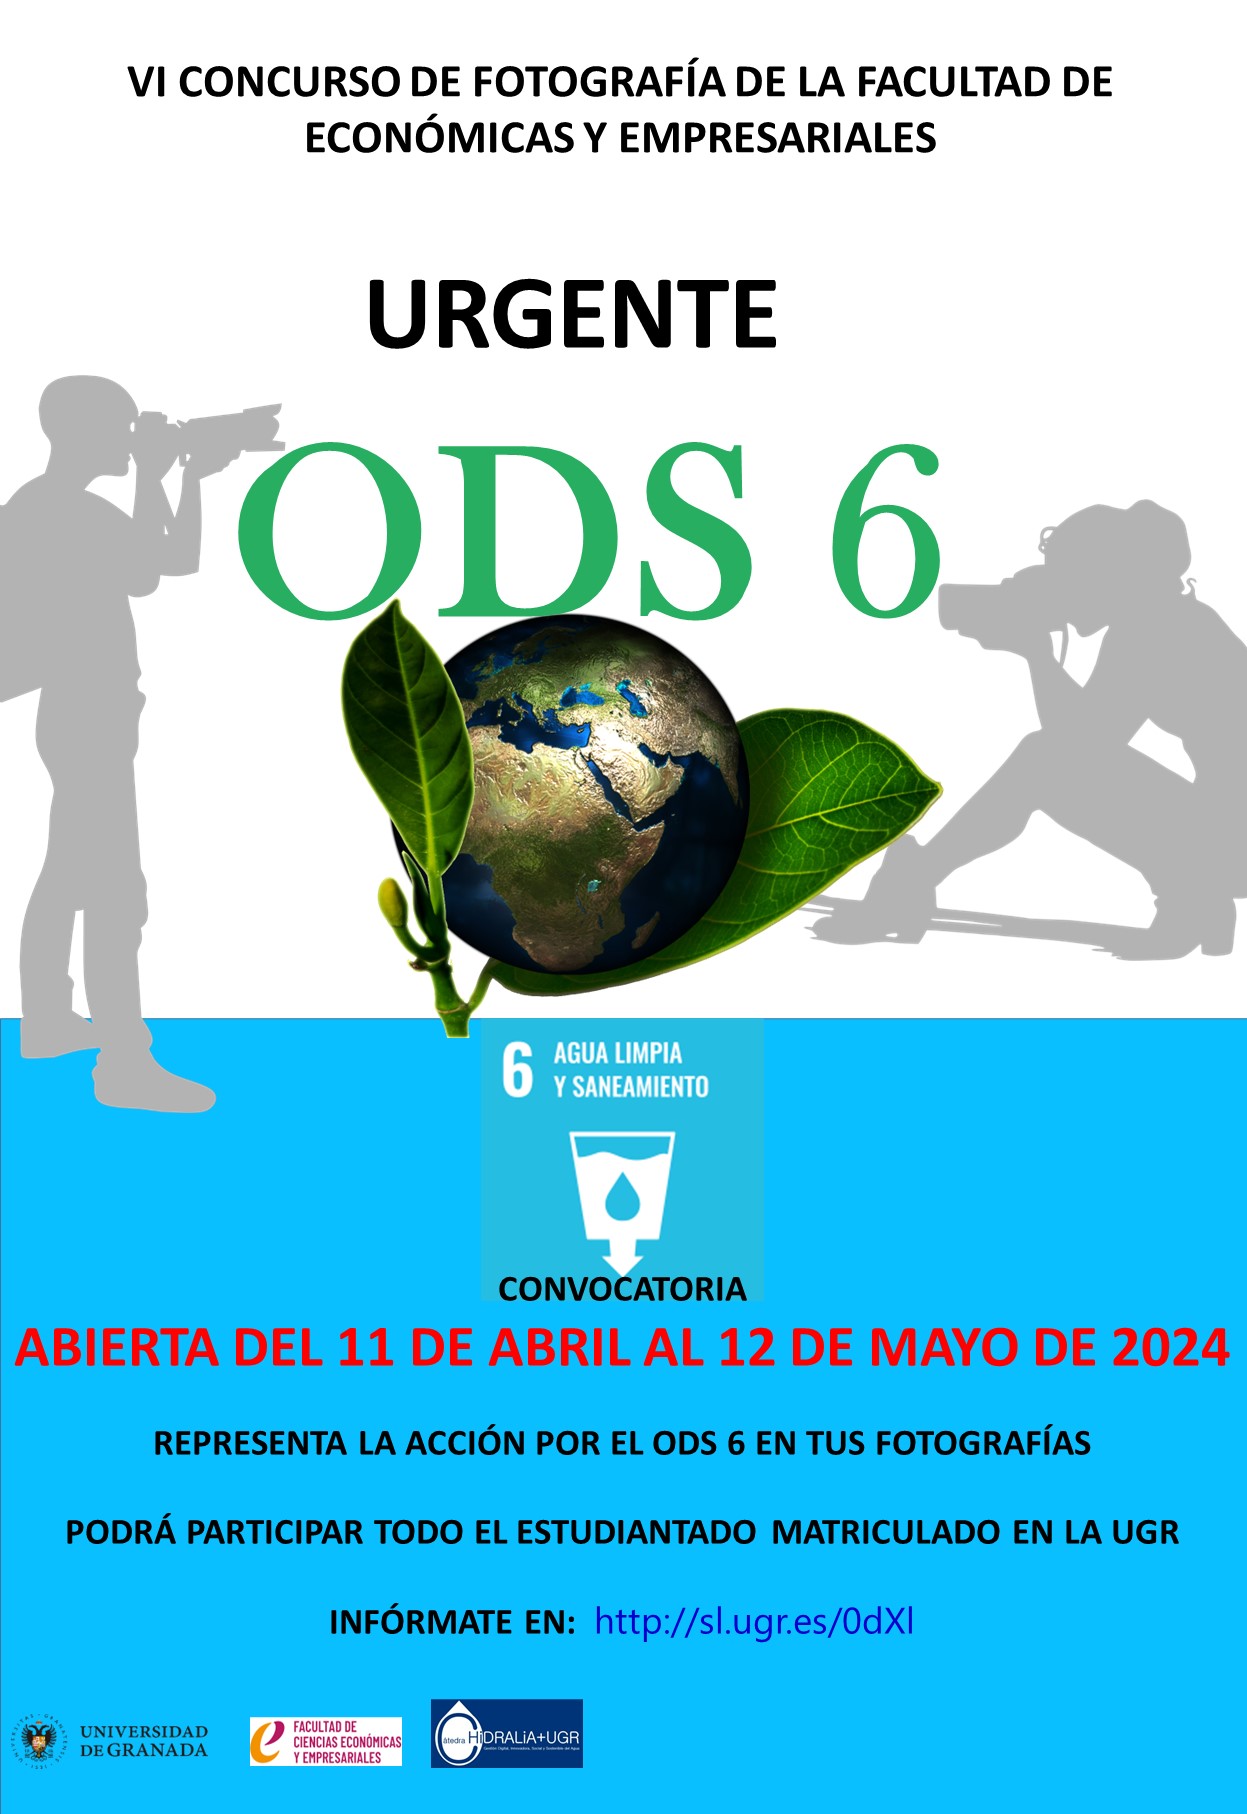 Cartel anunciador del VI Concurso de Fotografía “Urgente: ODS 6” de la Facultad